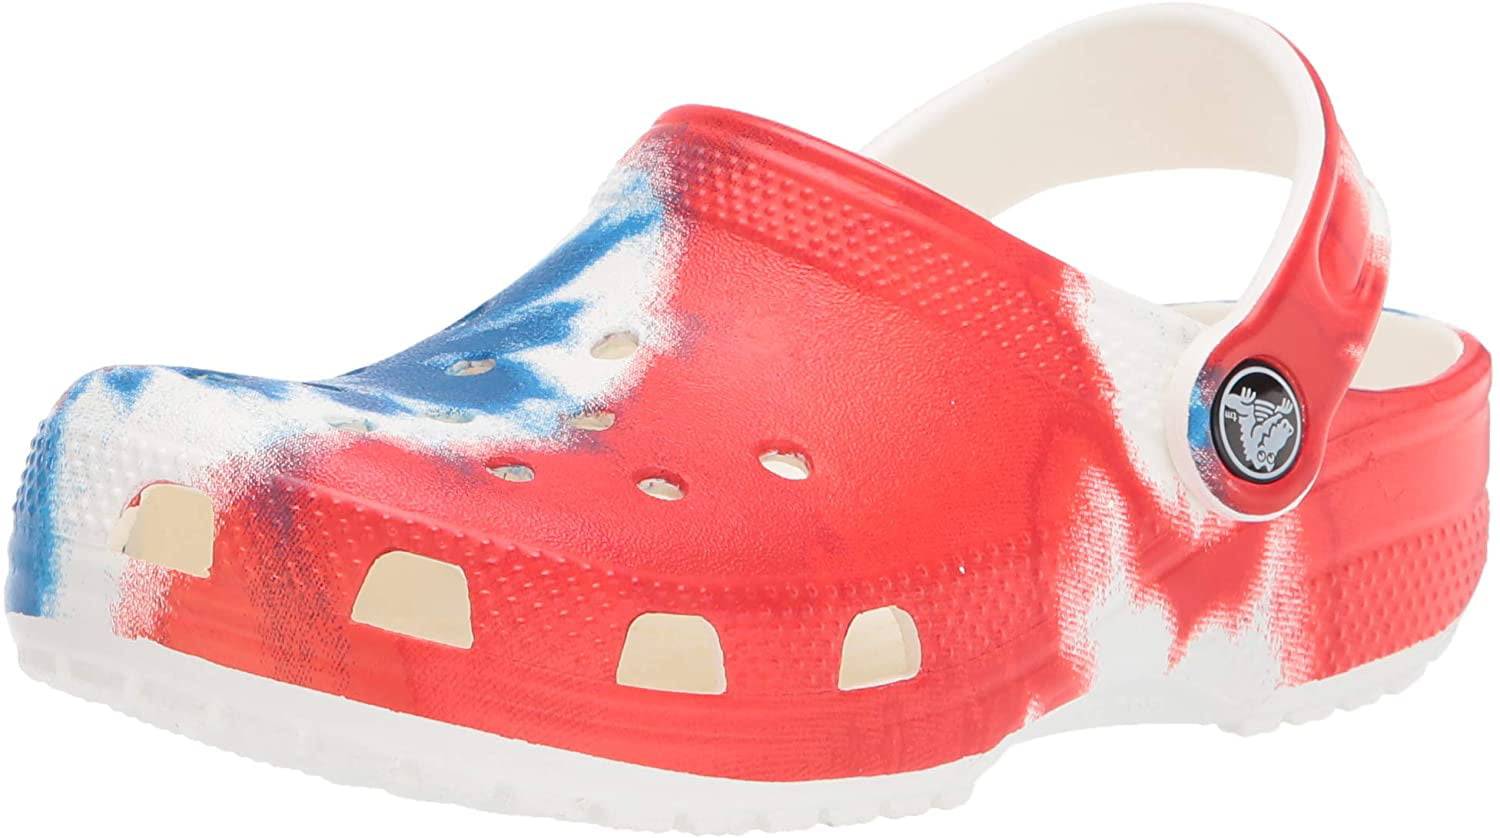 Multicolour - One Size Crocs OMG 3pk Shoe Decoration Charms